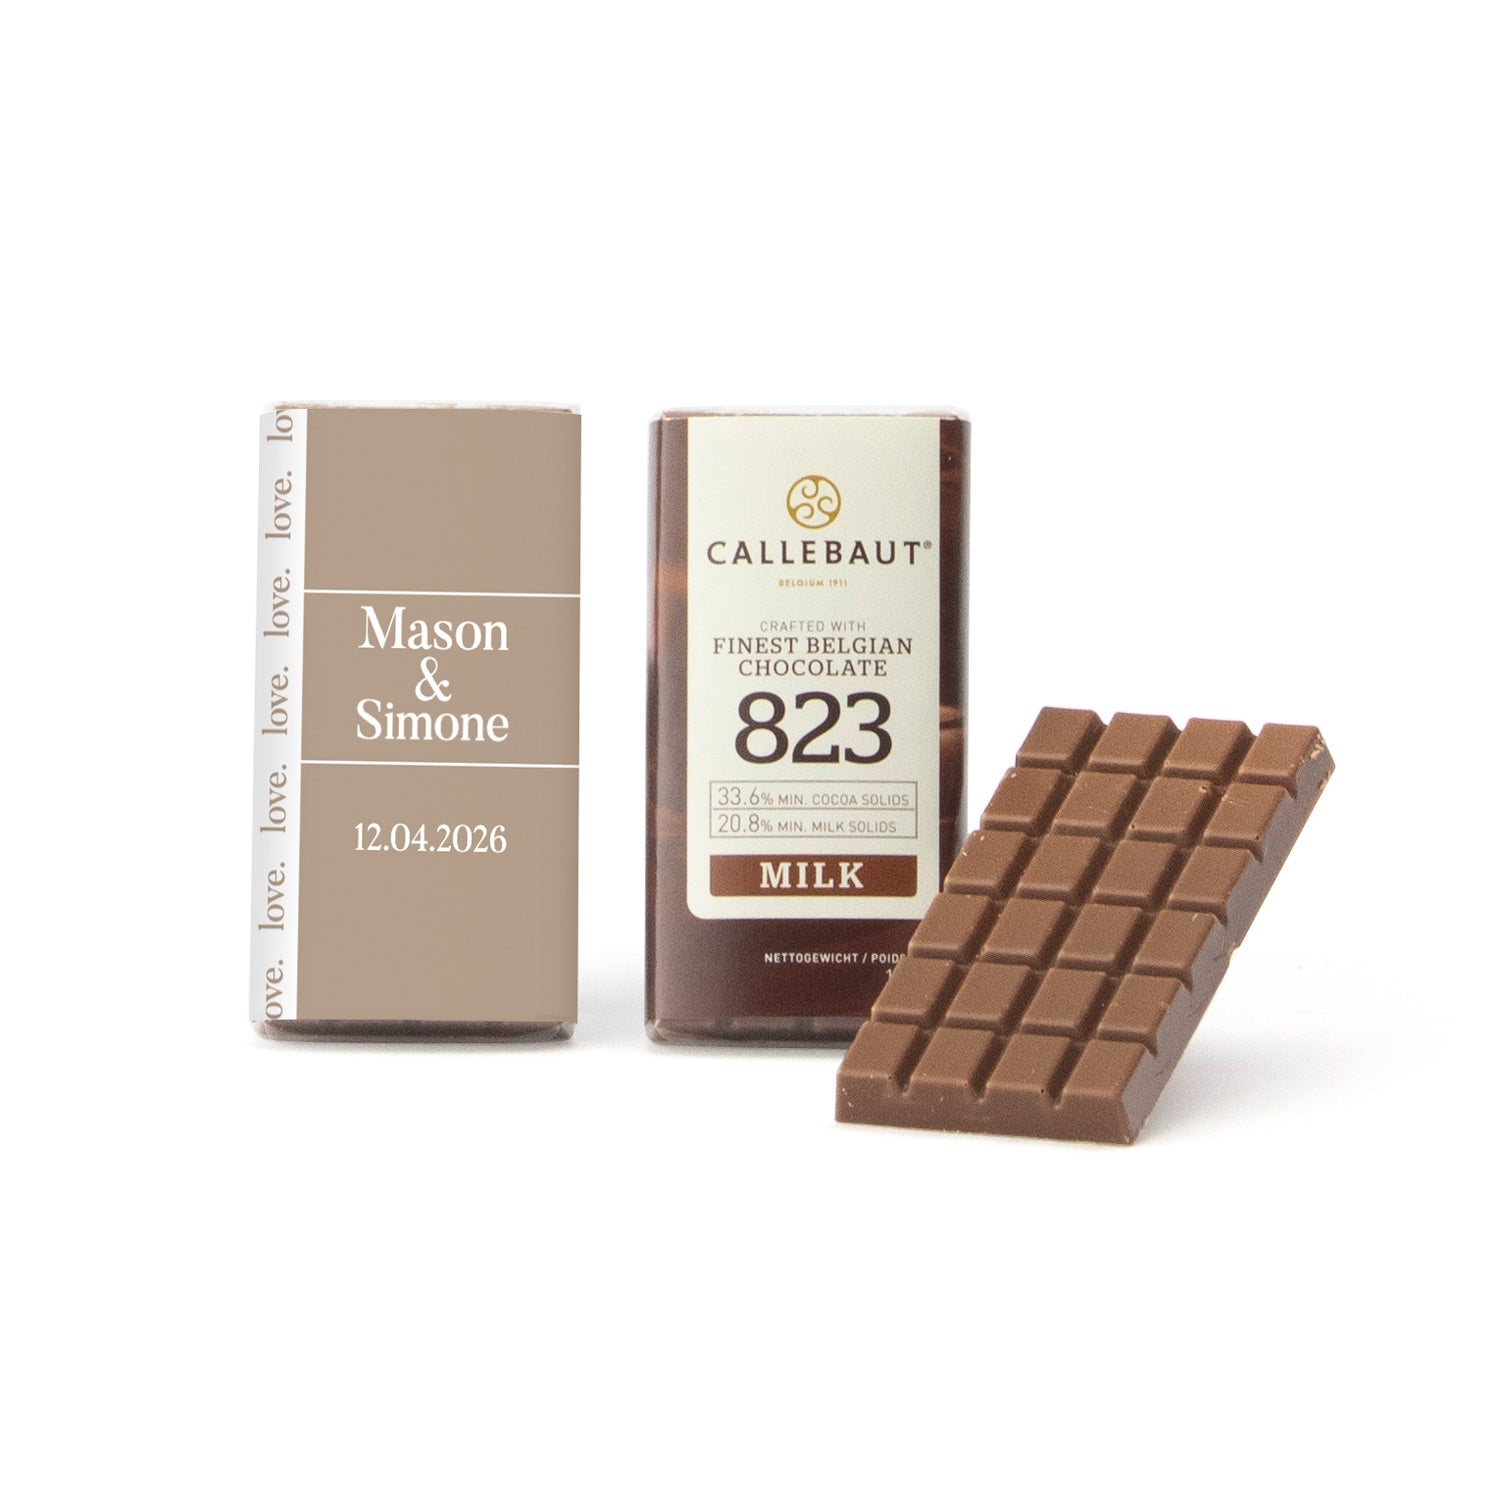 Callebaut chocolaatjes (25 stuks) - Trouwen - Bedankjes.nl